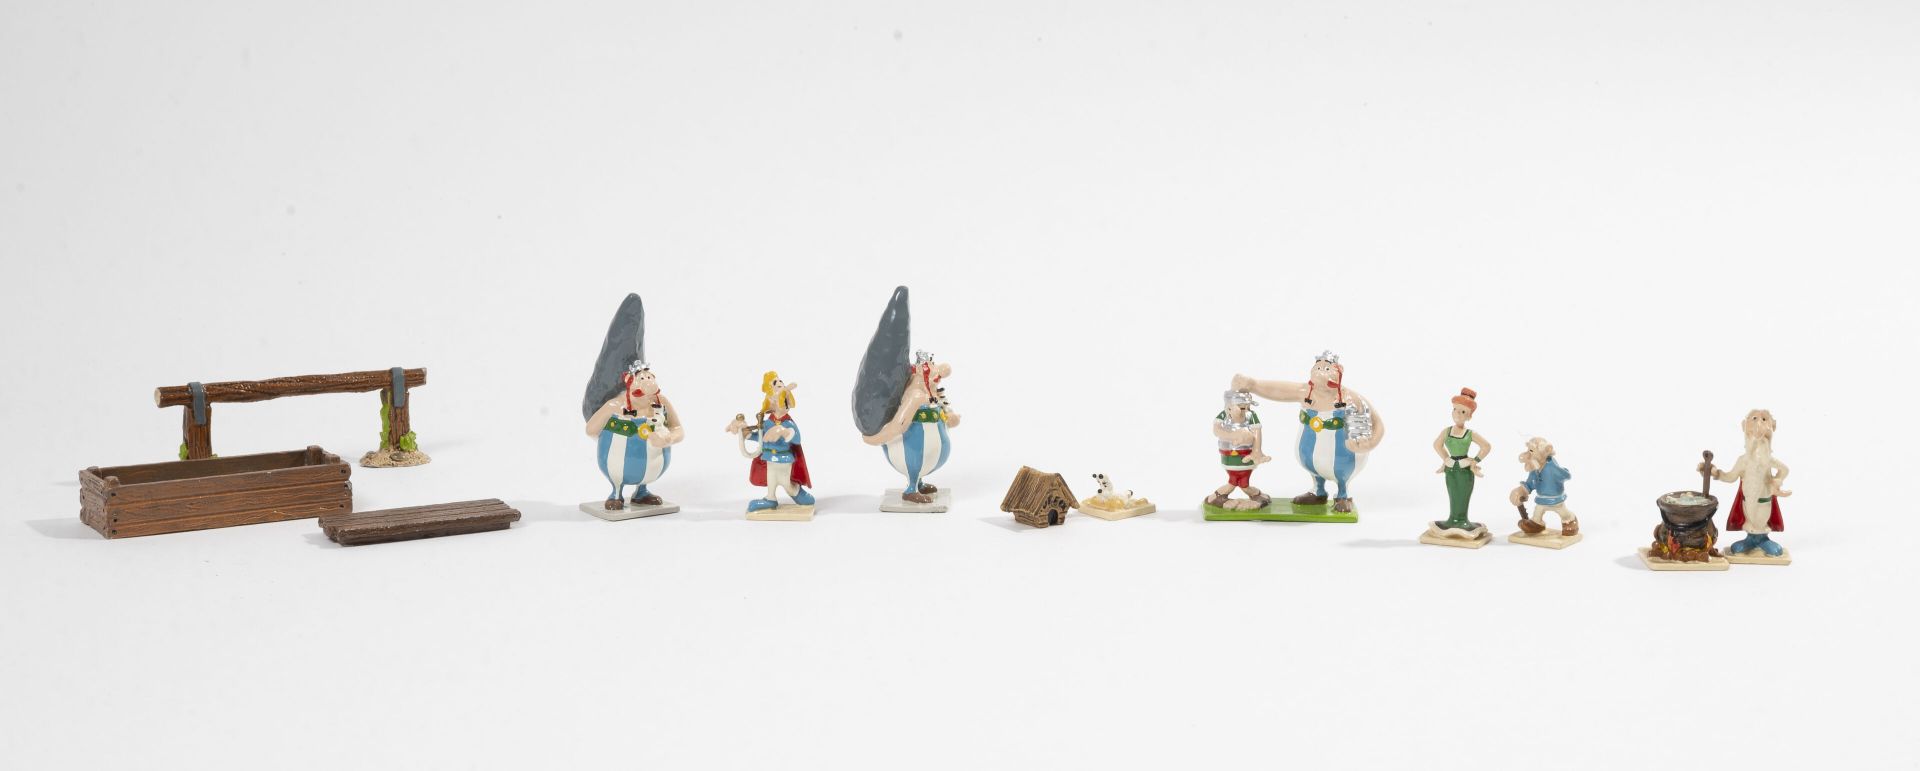 GOSCINNY / UDERZO PIXI, París.

Colección Mini & Village Asterix.

-Panoramix.

&hellip;